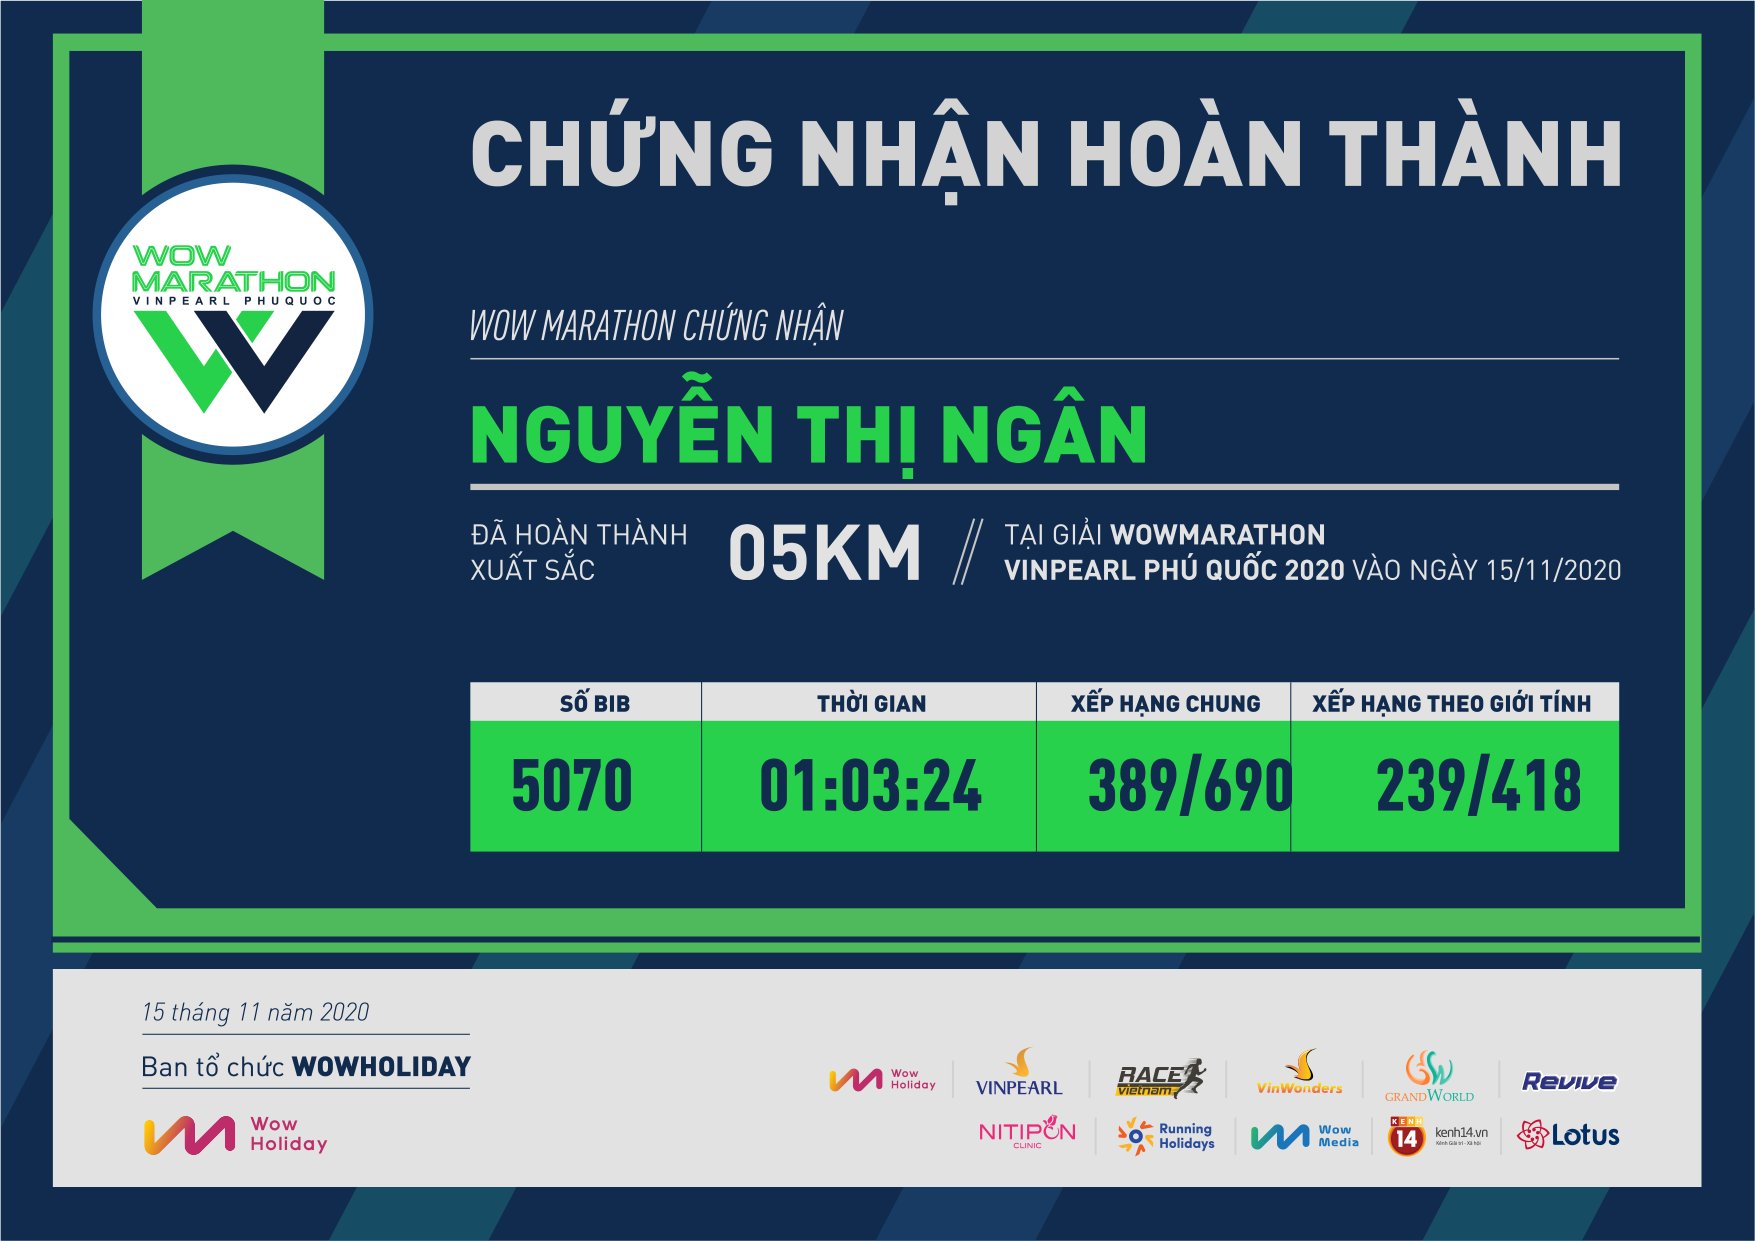 5070 - Nguyễn Thị Ngân